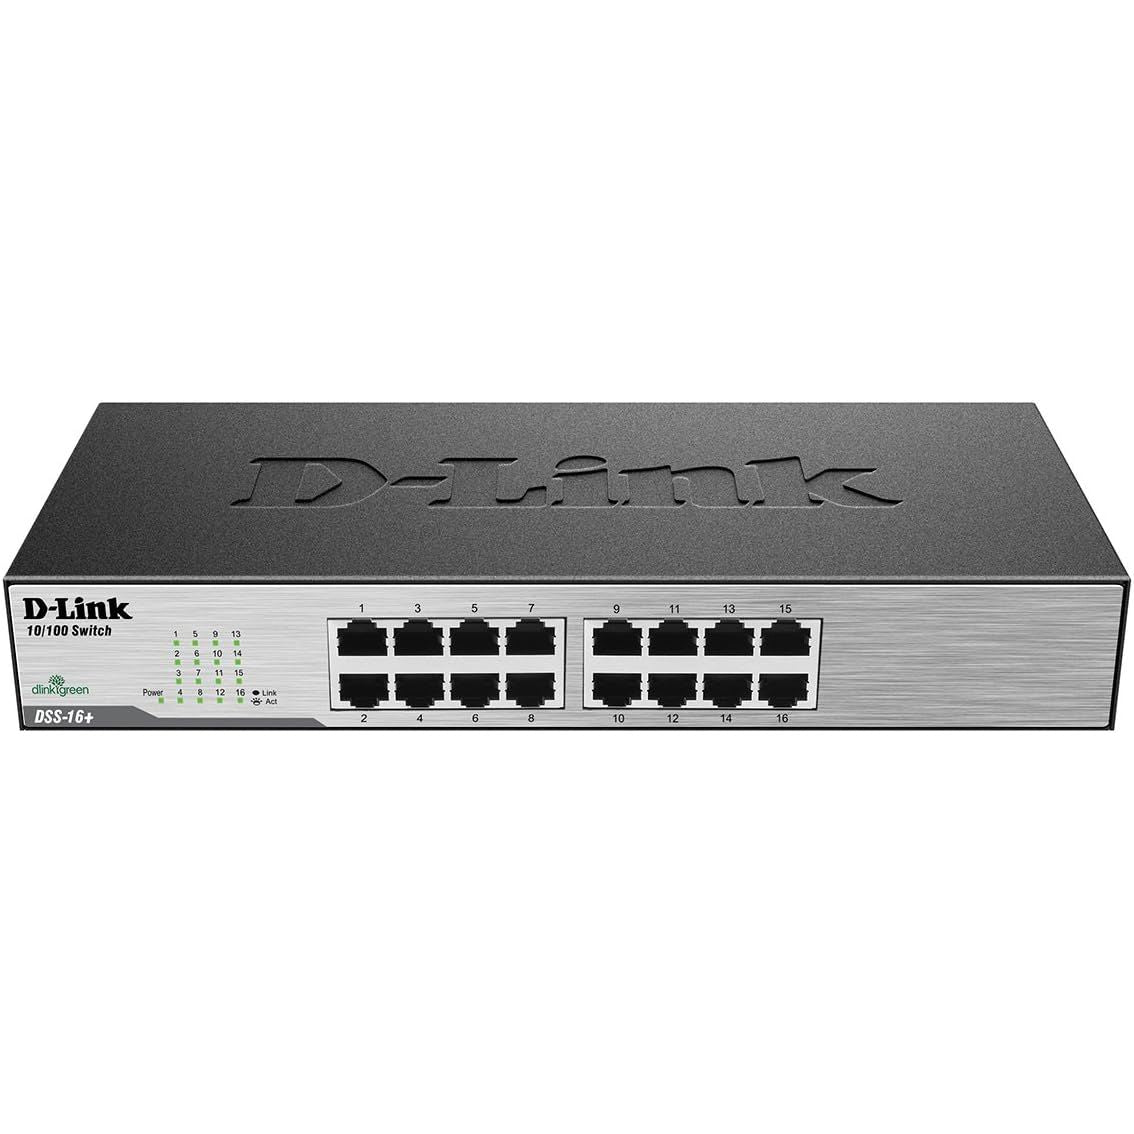 D-Link Switch de 16 puertos 10/100 (DSS-16+)